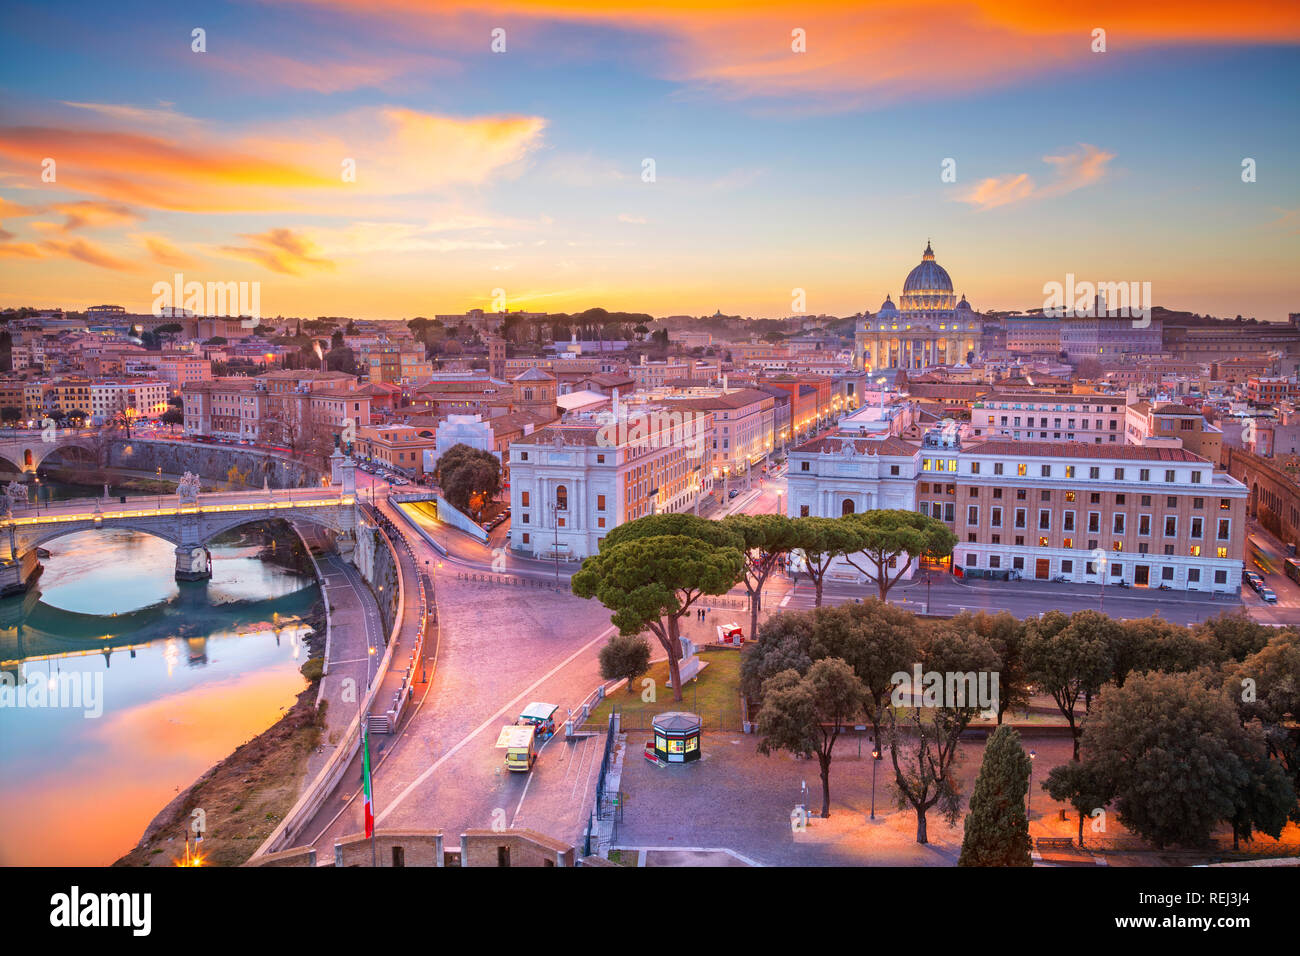 Rom, Vatikanstadt. Antenne Stadtbild Bild des Vatikan mit der St. Peter Basilika, Rom, Italien während der schönen Sonnenuntergang. Stockfoto